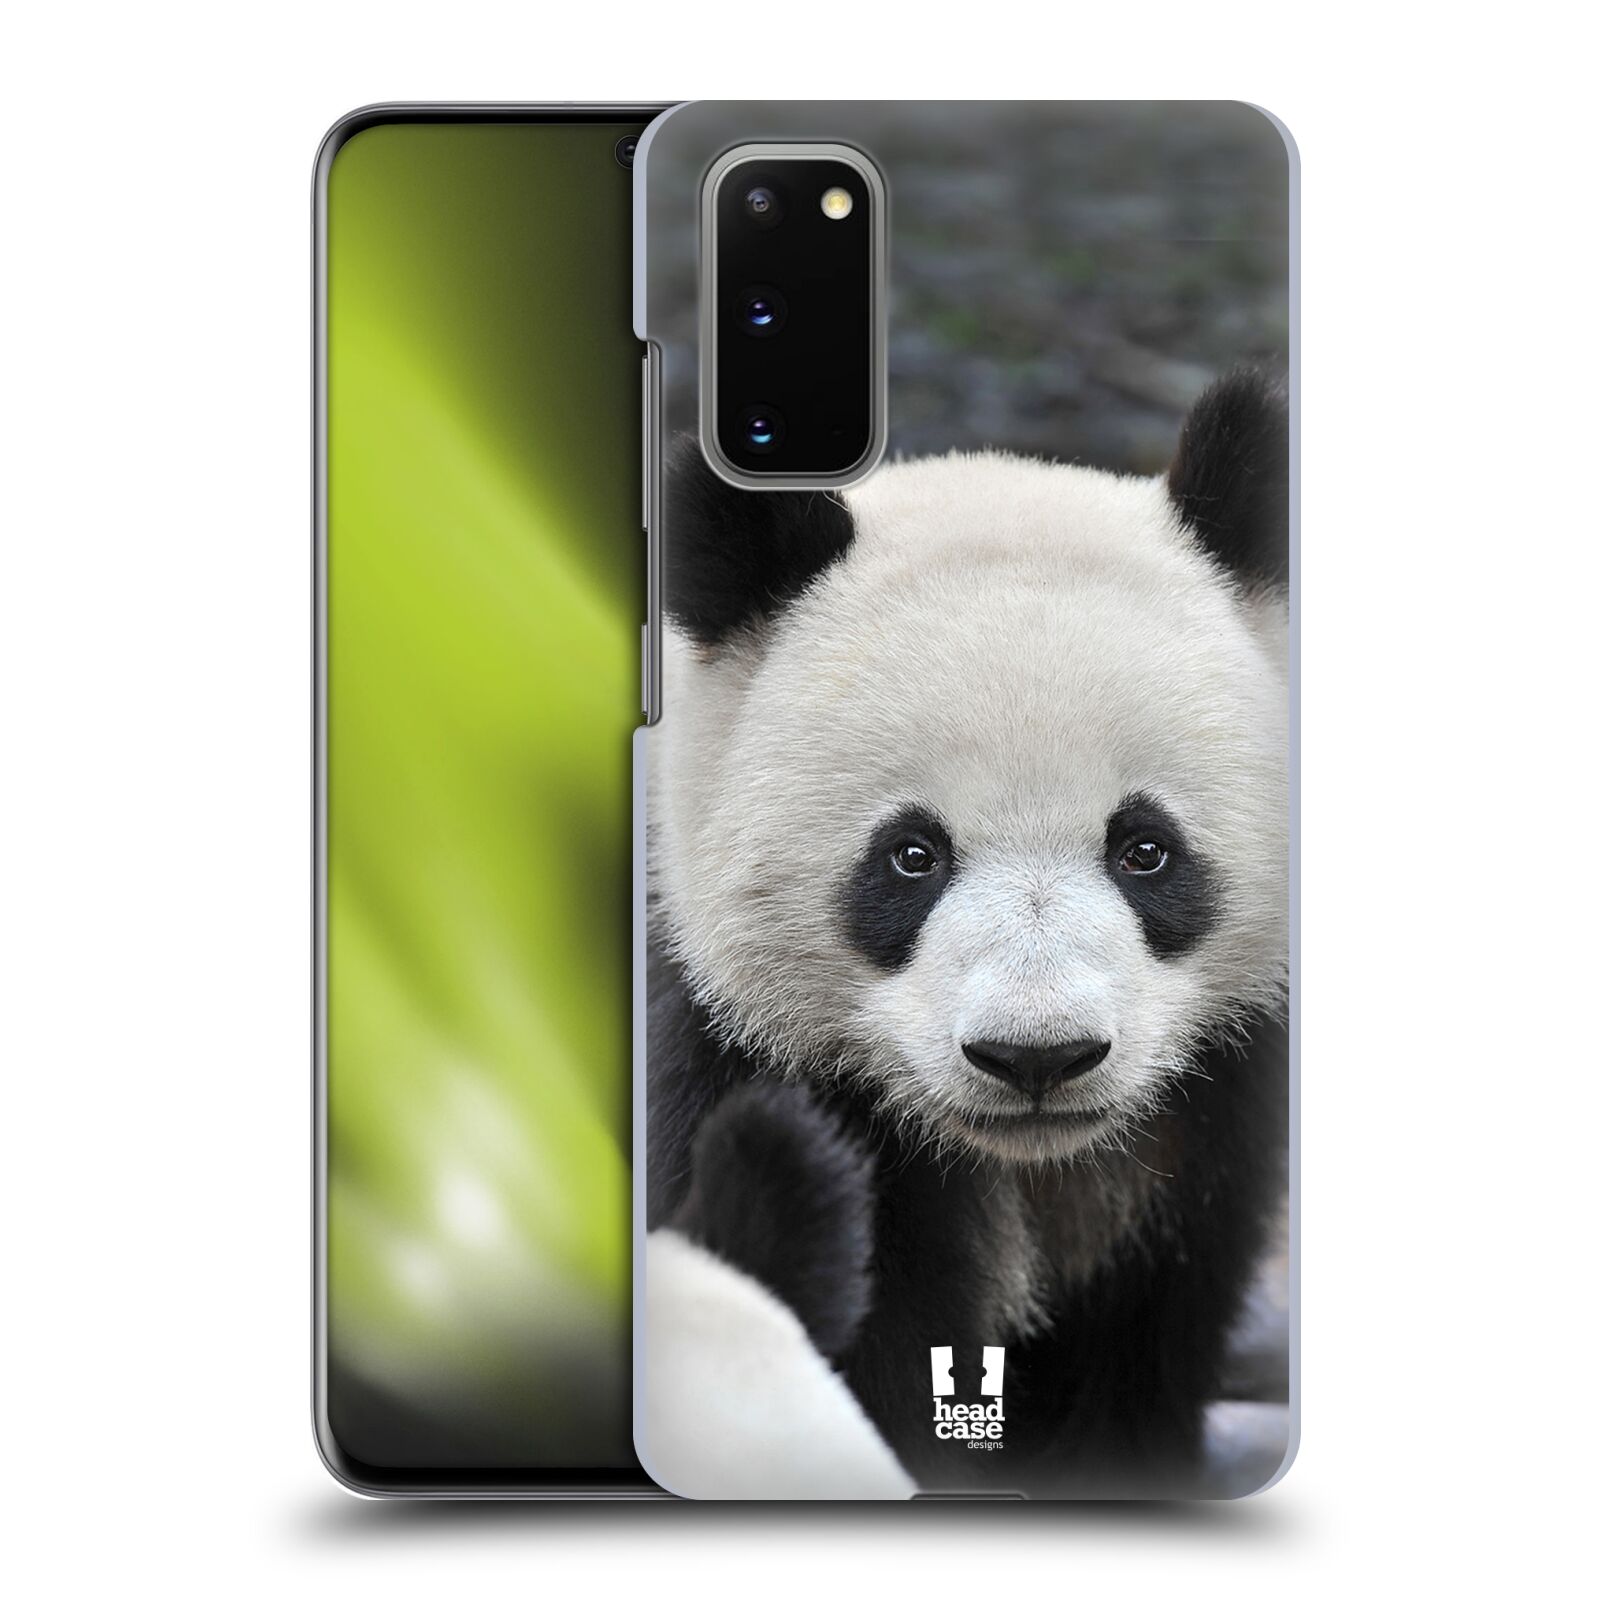 Zadní obal pro mobil Samsung Galaxy S20 / S20 5G - HEAD CASE - Svět zvířat medvěd panda